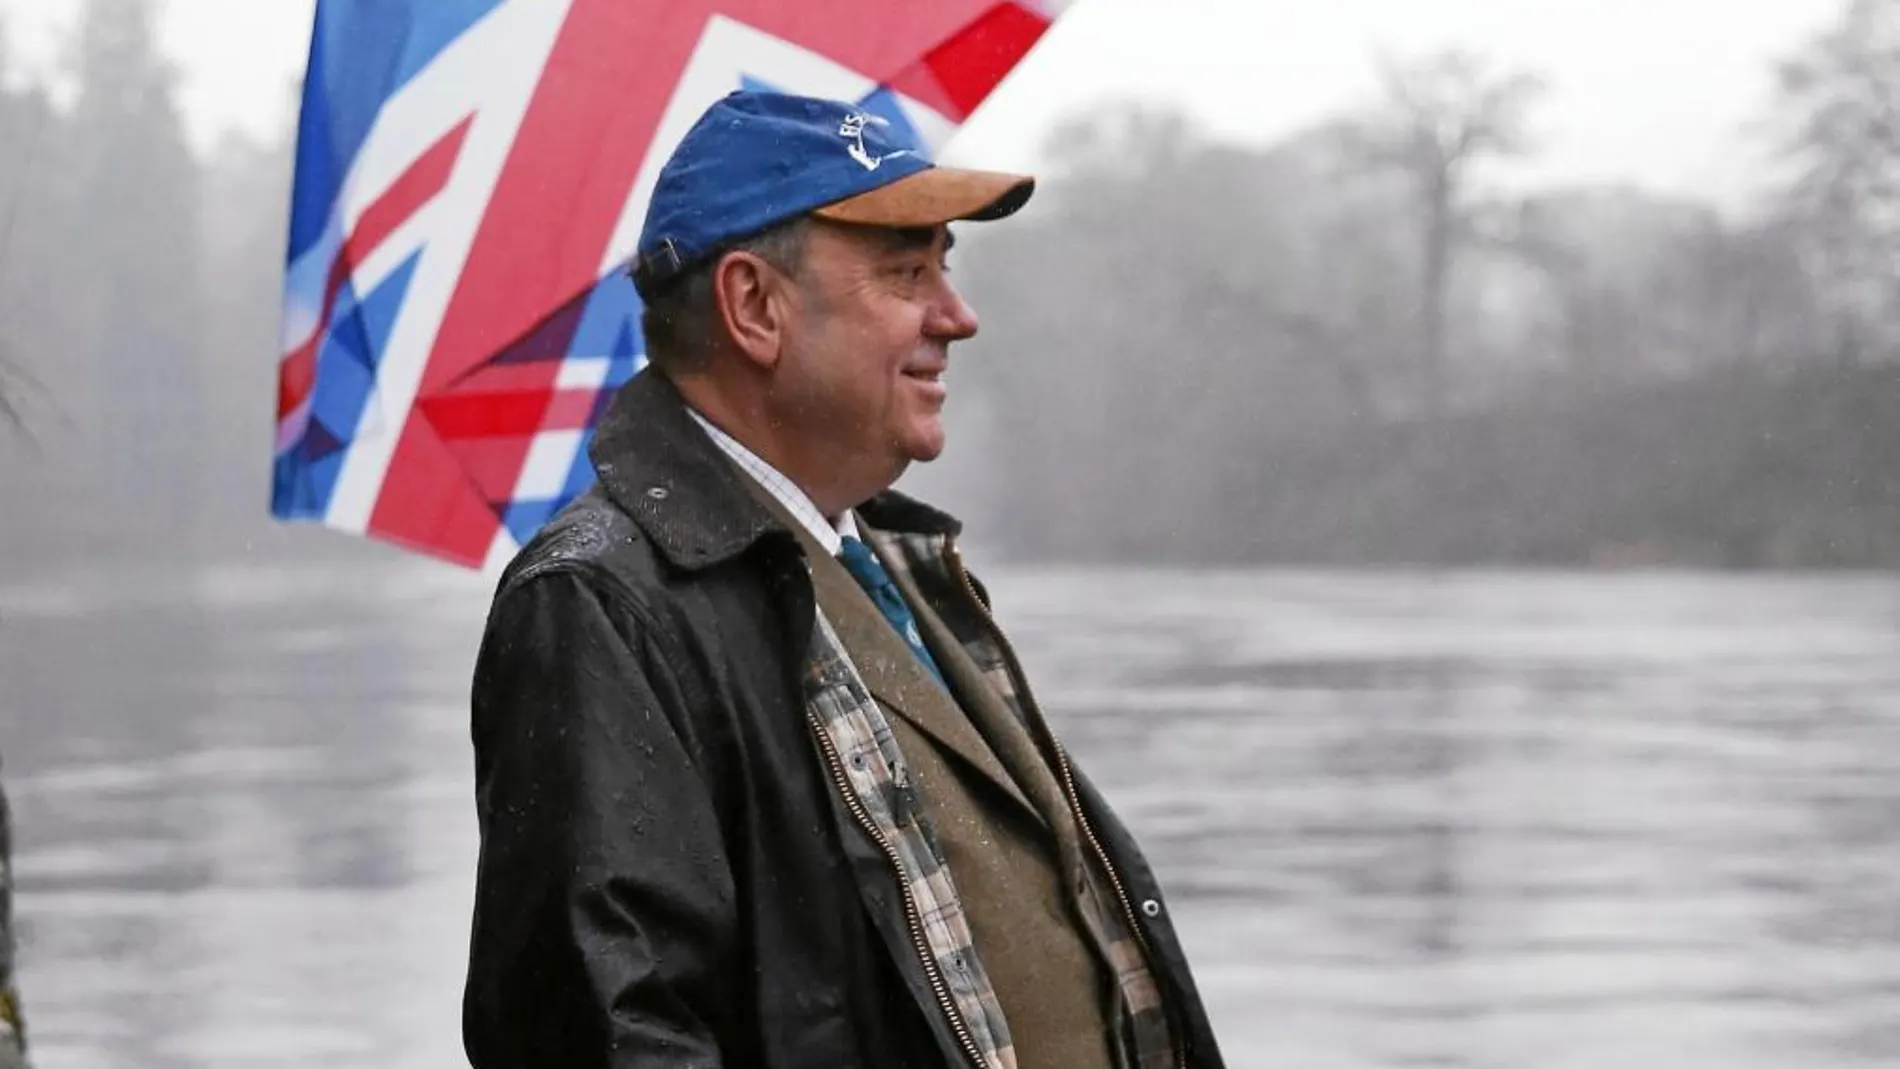 El primer ministro de Escocia, Alex Salmond, frente a una bandera de Reino Unido